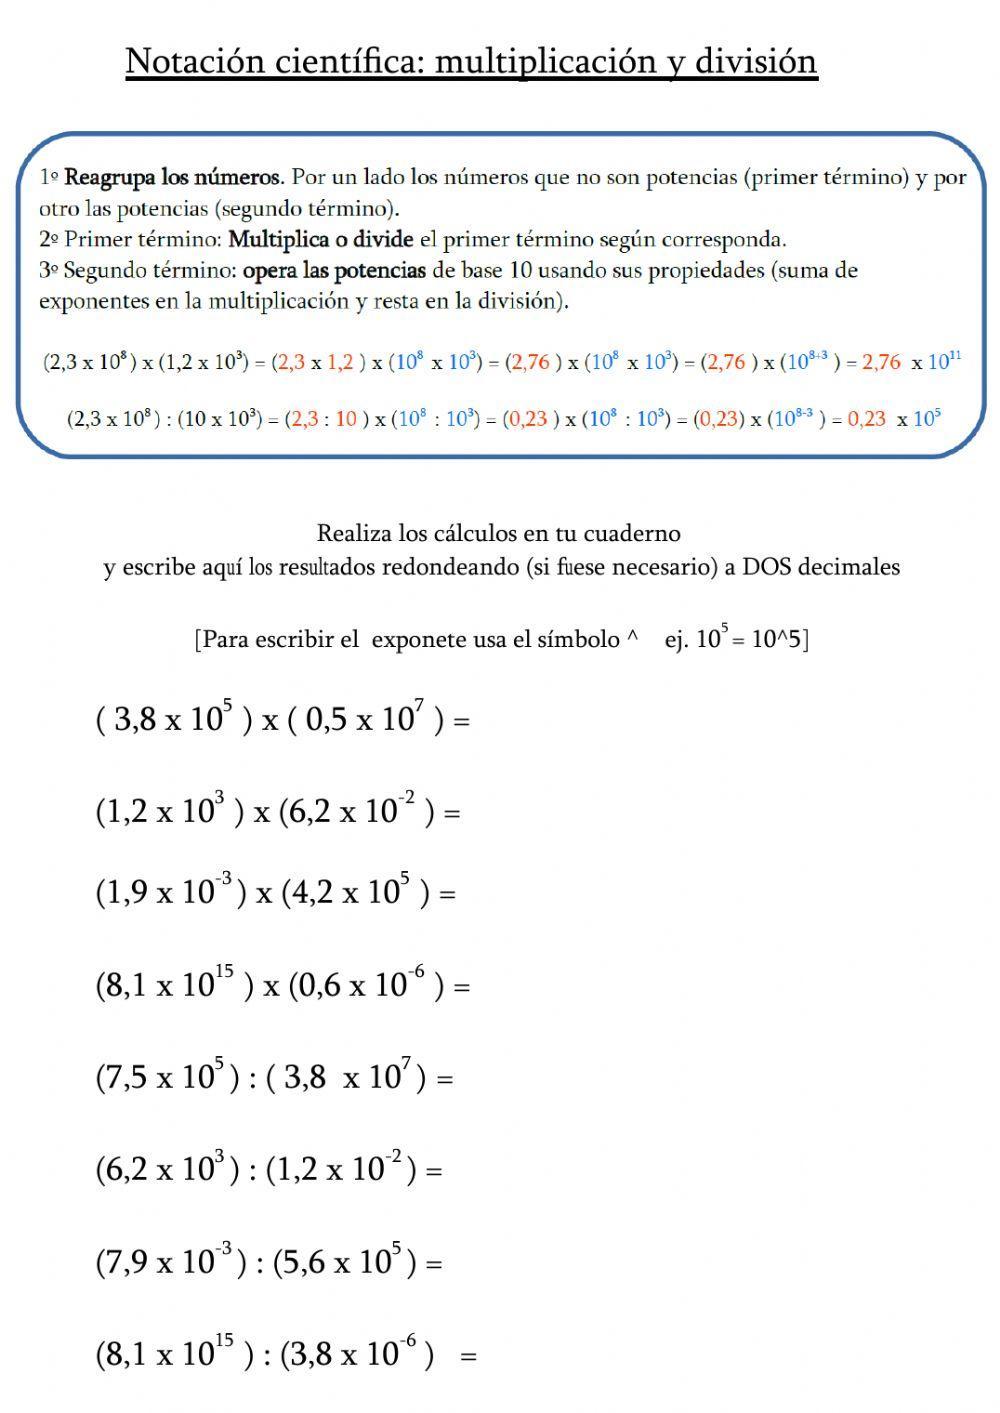 Notación científica: multiplicaciones y divisiones